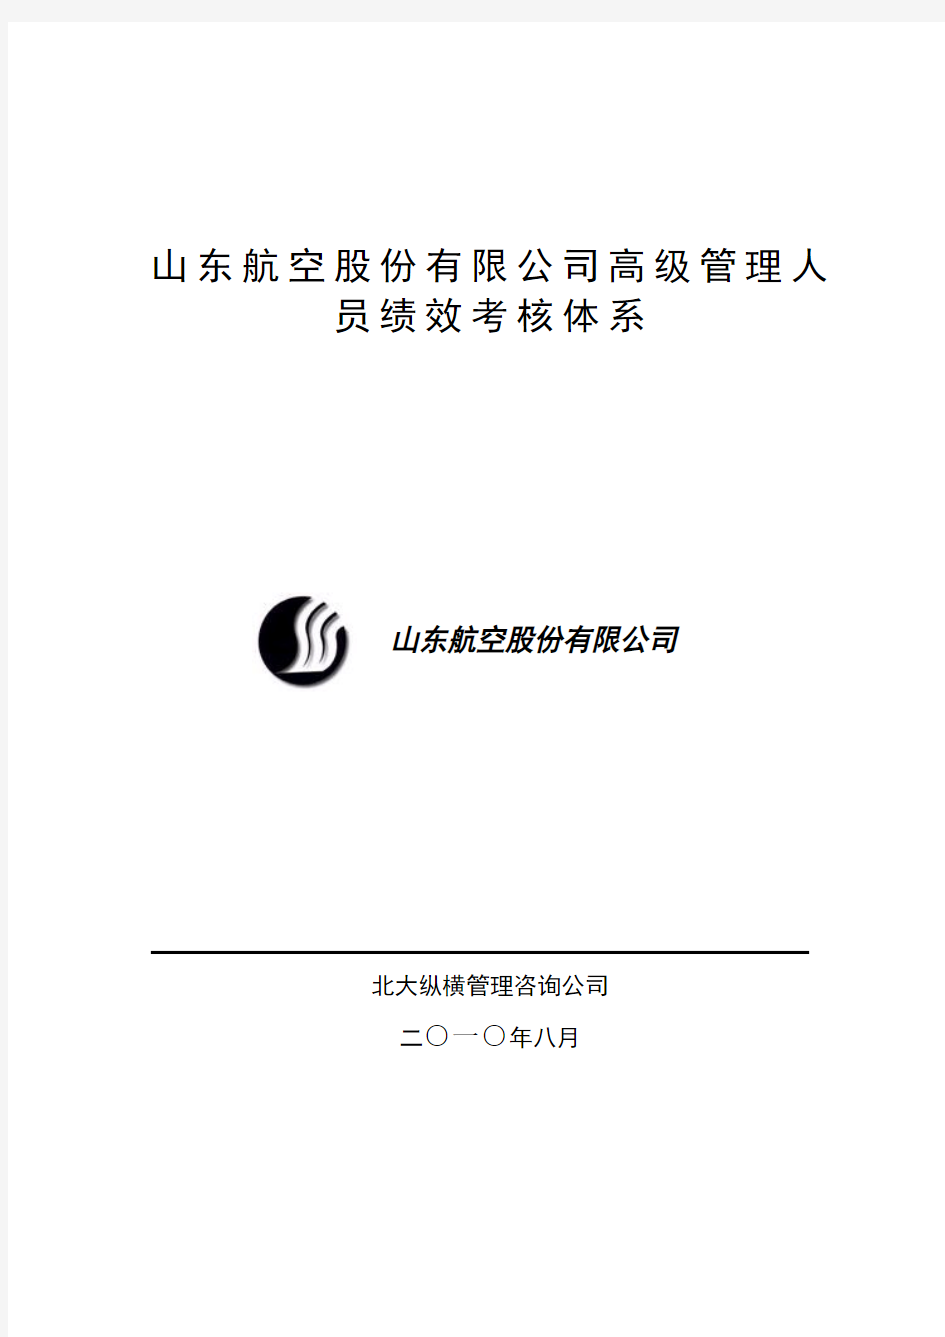 山东航空股份公司高级管理人员绩效考核管理制度(DOC 25页)